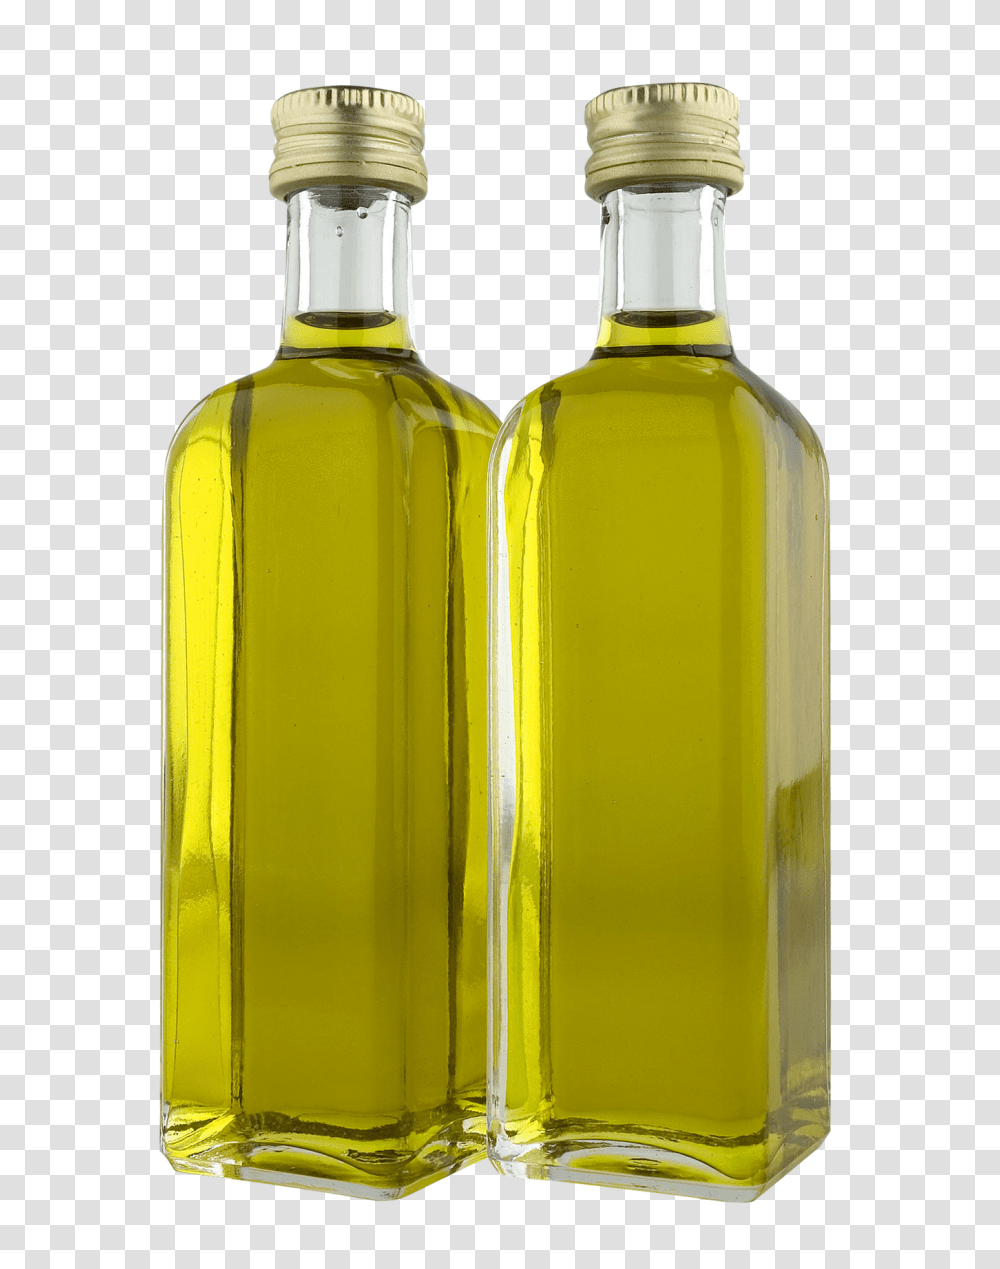 Olive Oil Bottles Image, Food, Glass, Syrup, Seasoning Transparent Png